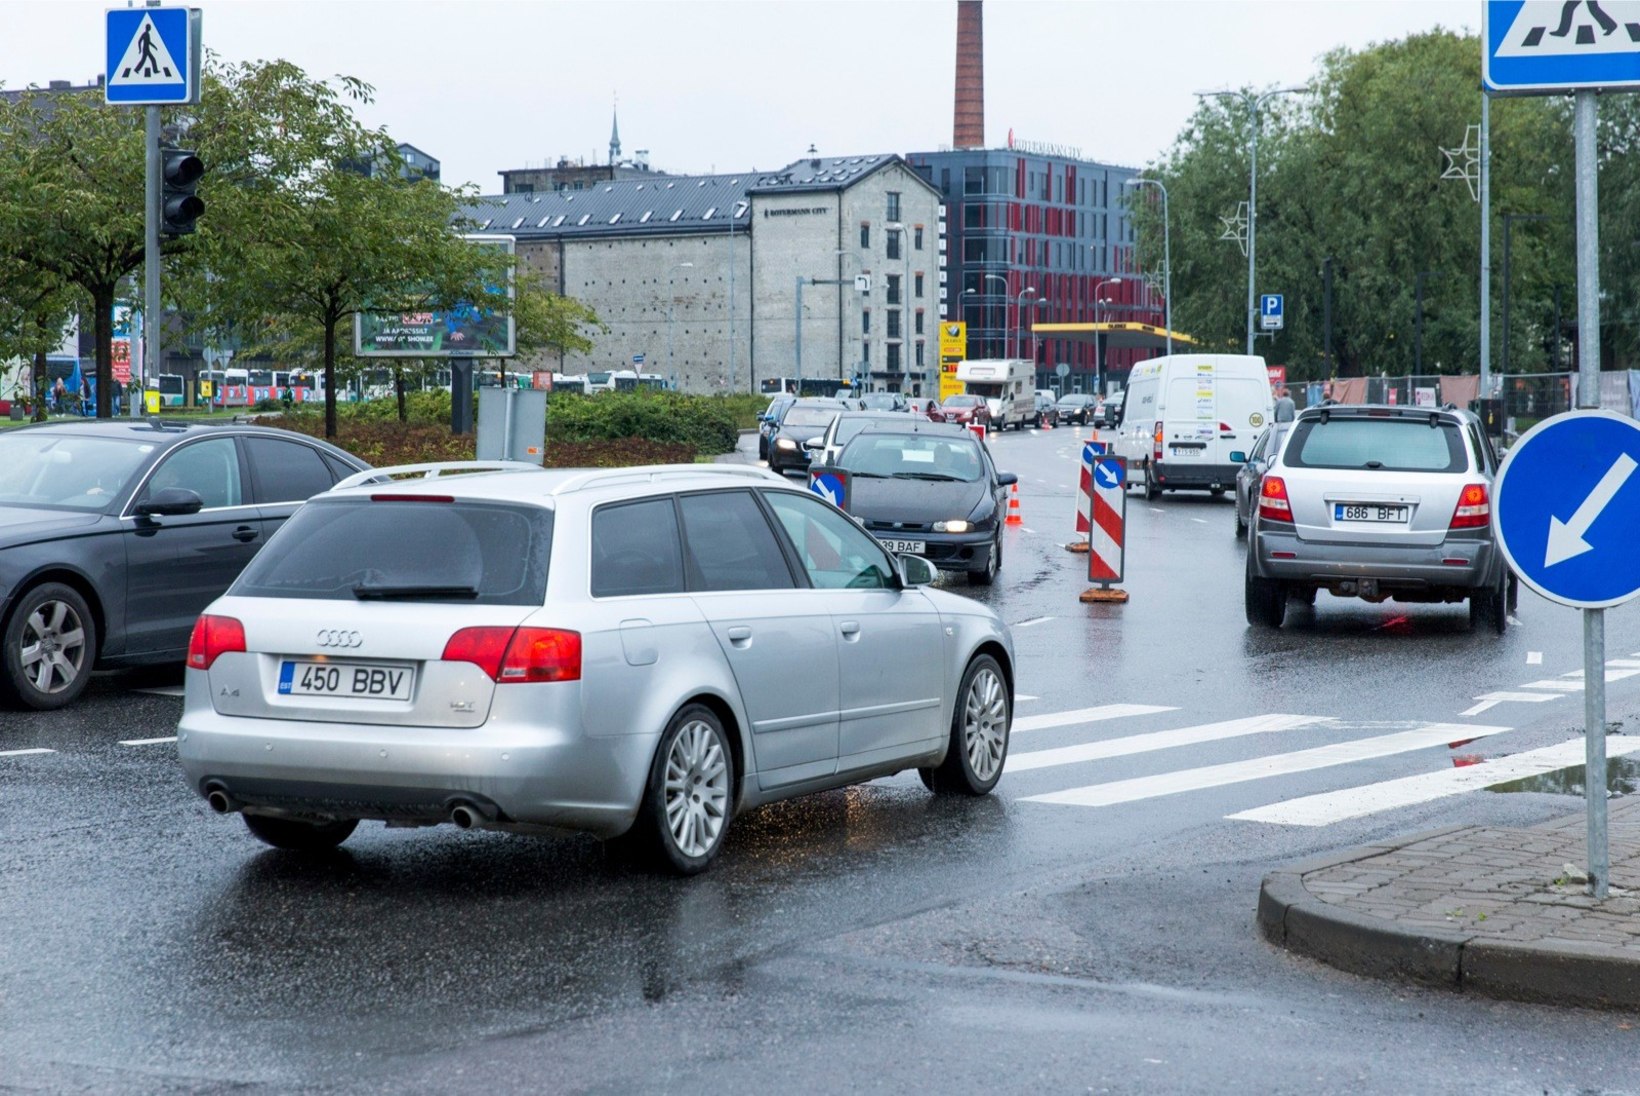 GALERII | Teeremont ja rahvajooks ehk vaata laupäevast segadust Tallinna liikluses